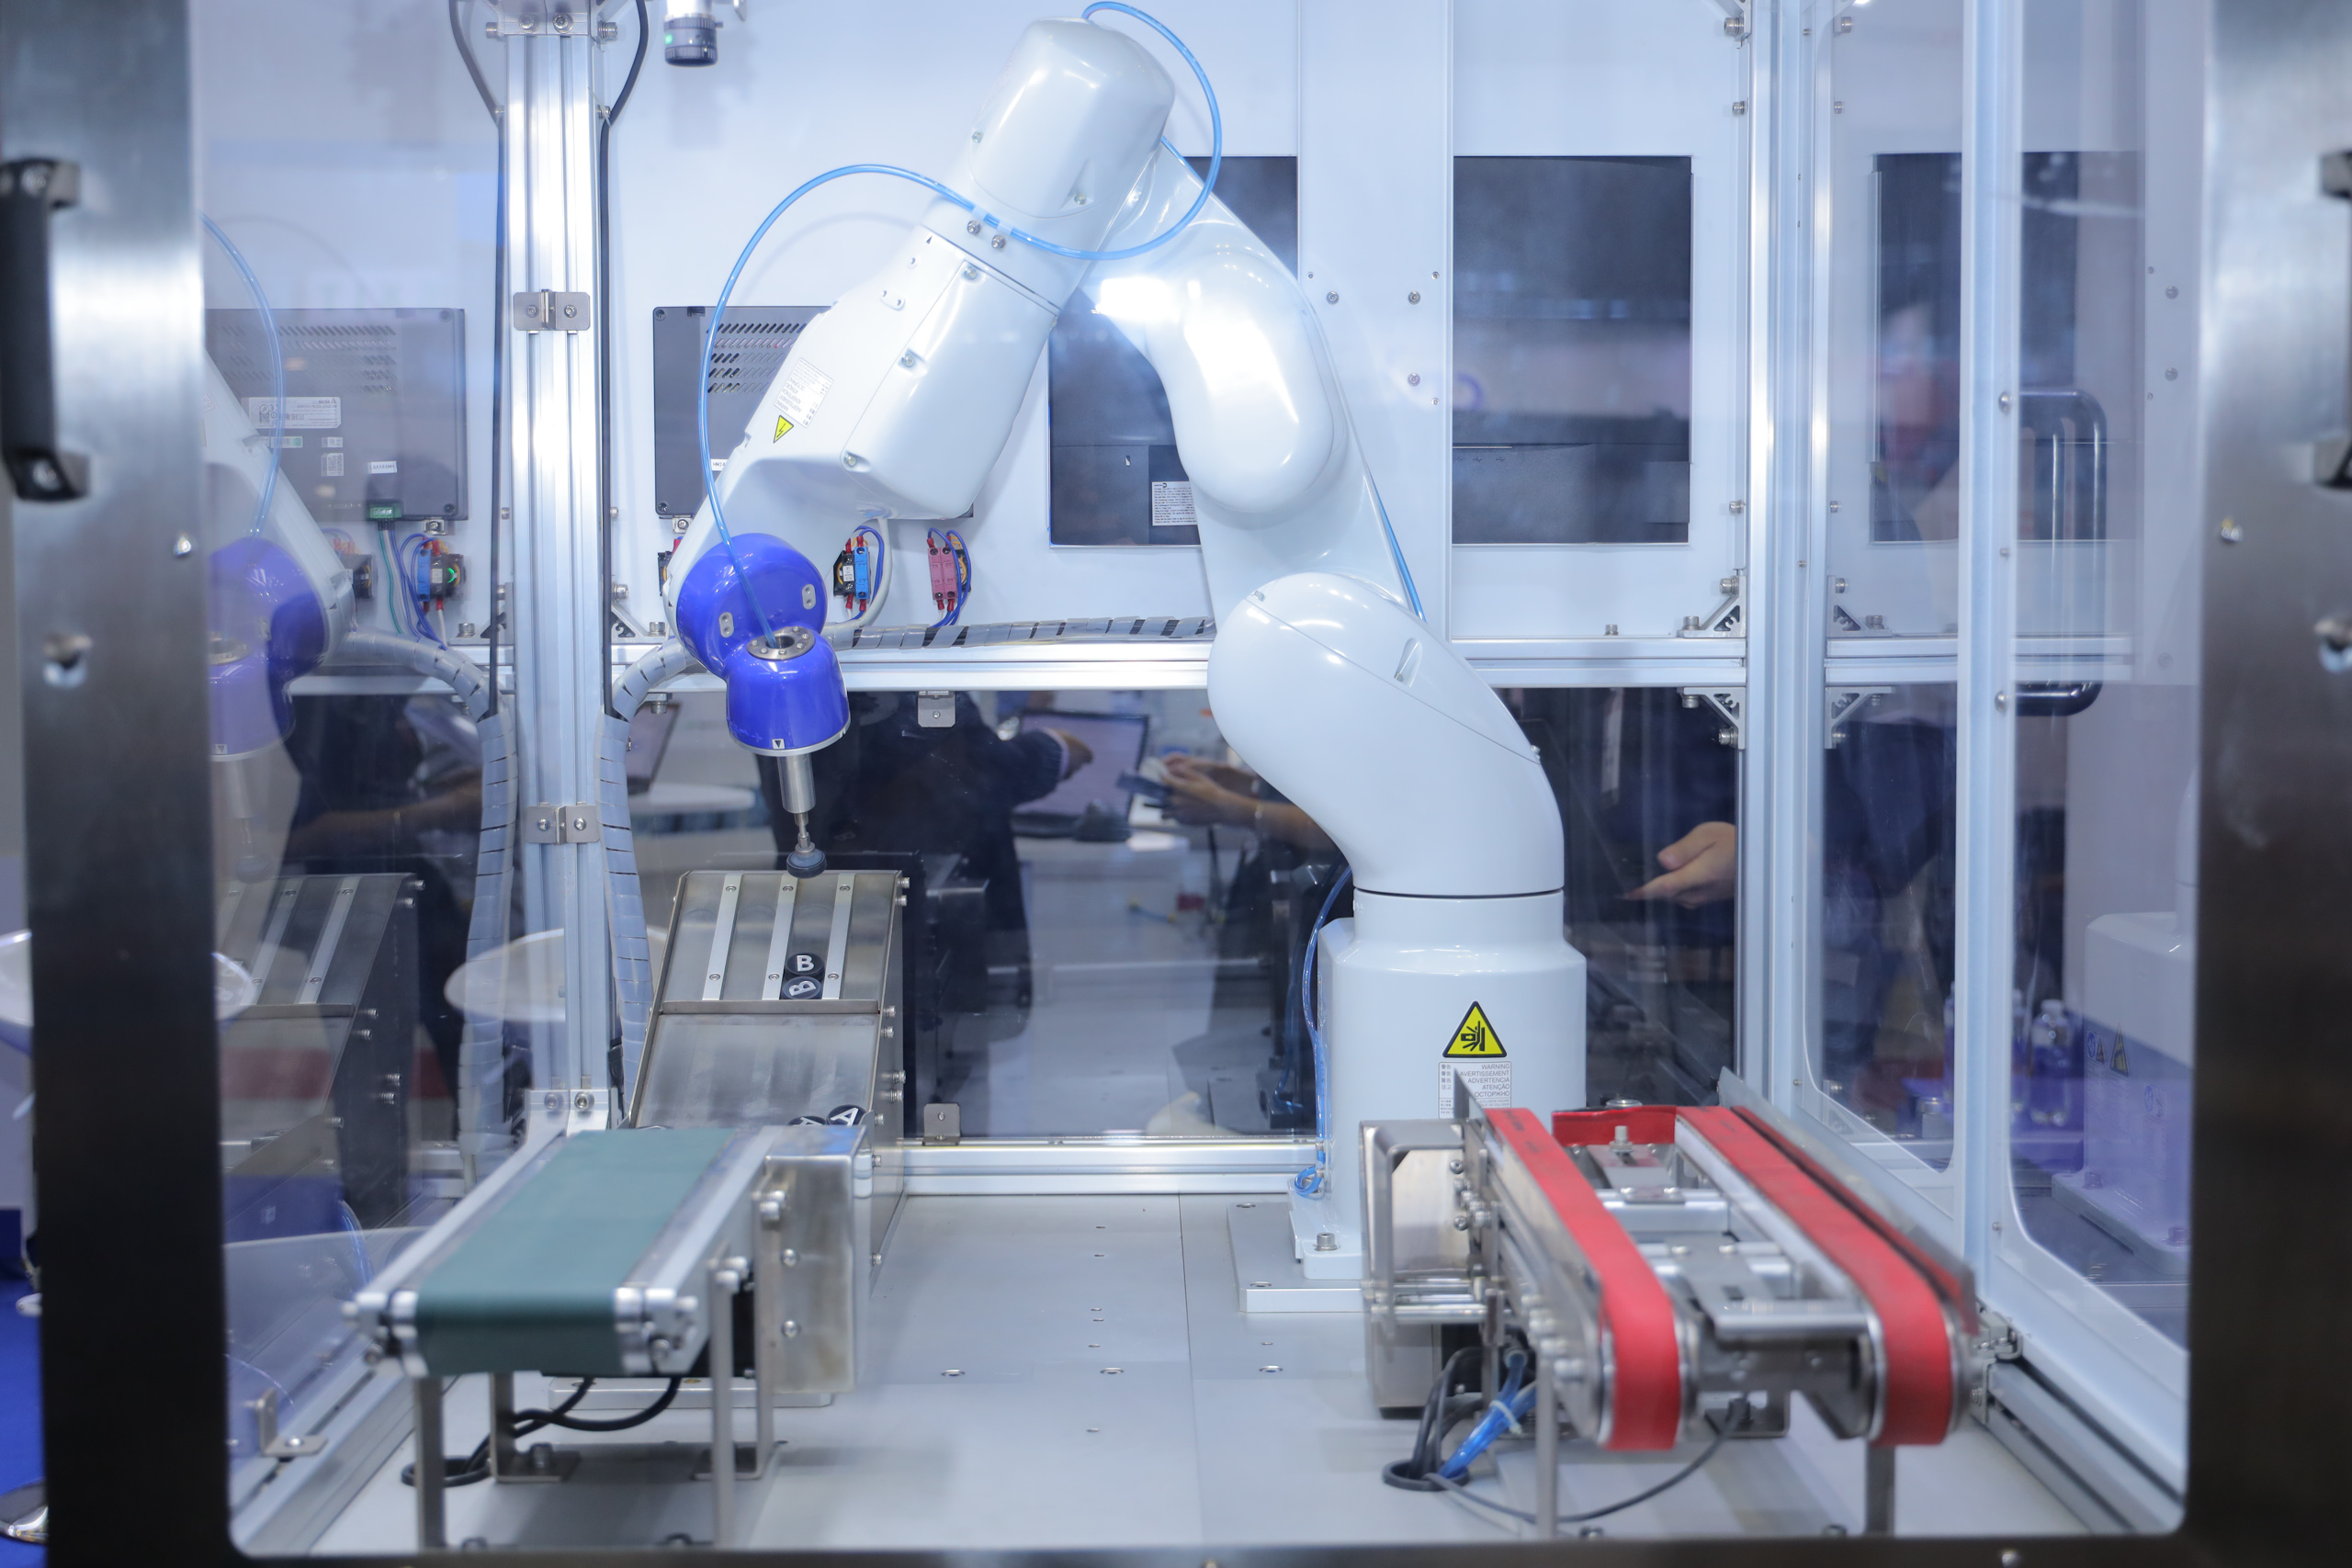 Epson tham gia triển lãm quốc tế Metalex 2022 lần đầu tiên giới thiệu robot công nghiệp ở khu vực phía Nam